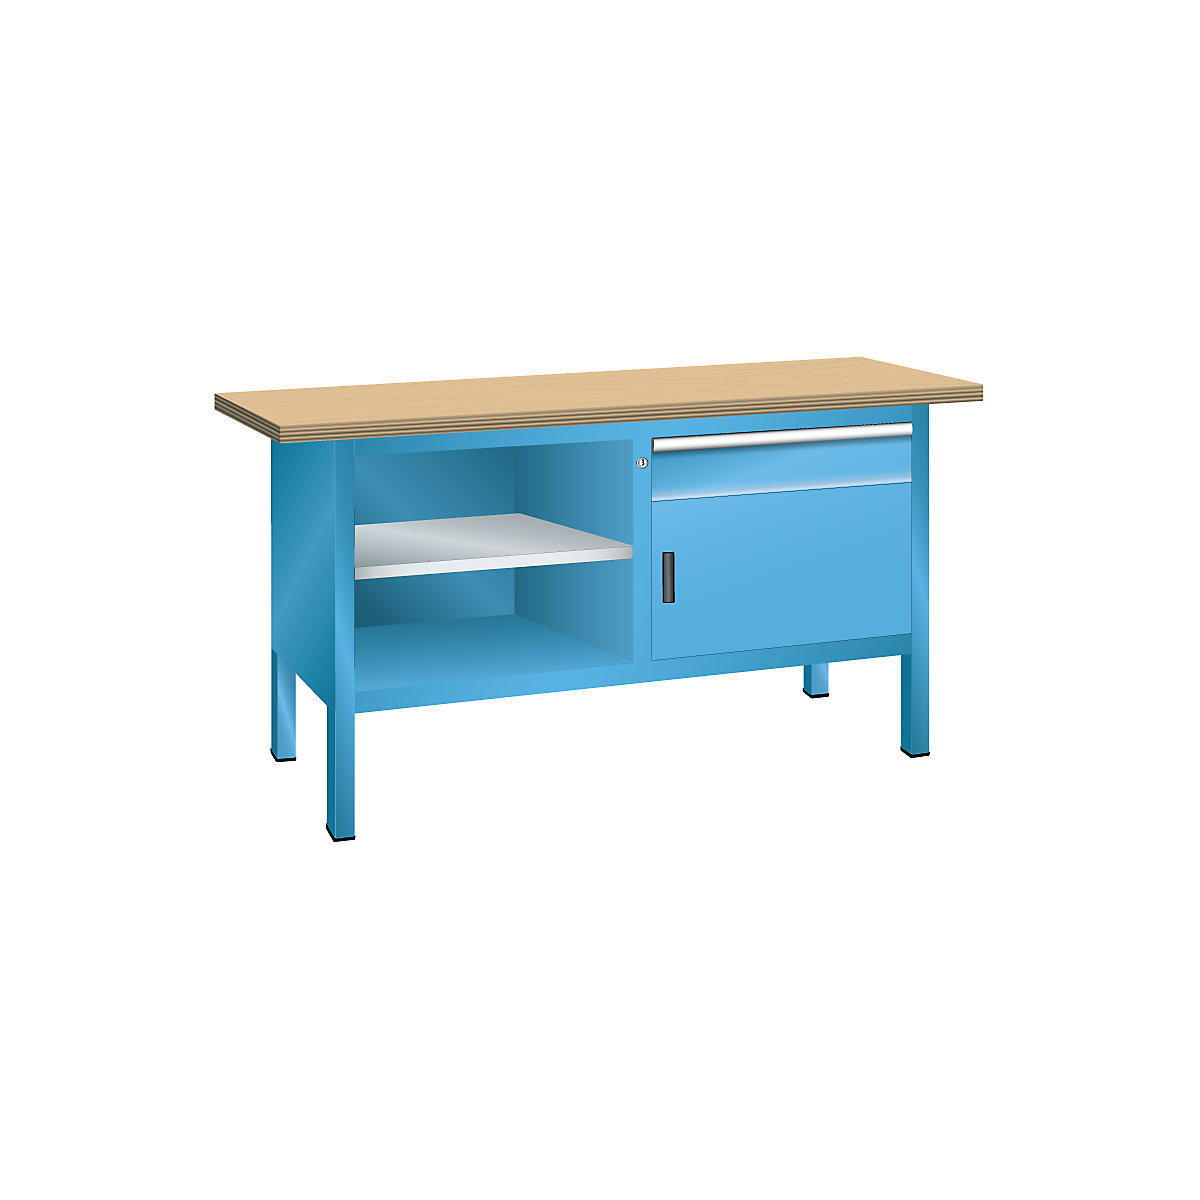 Stół warsztatowy z blatem z multipleksu, konstrukcja ramowa – LISTA, 1 szuflada, 1 drzwi, 3 półki, korpus jasnoniebieski, front jasnoniebieski-10